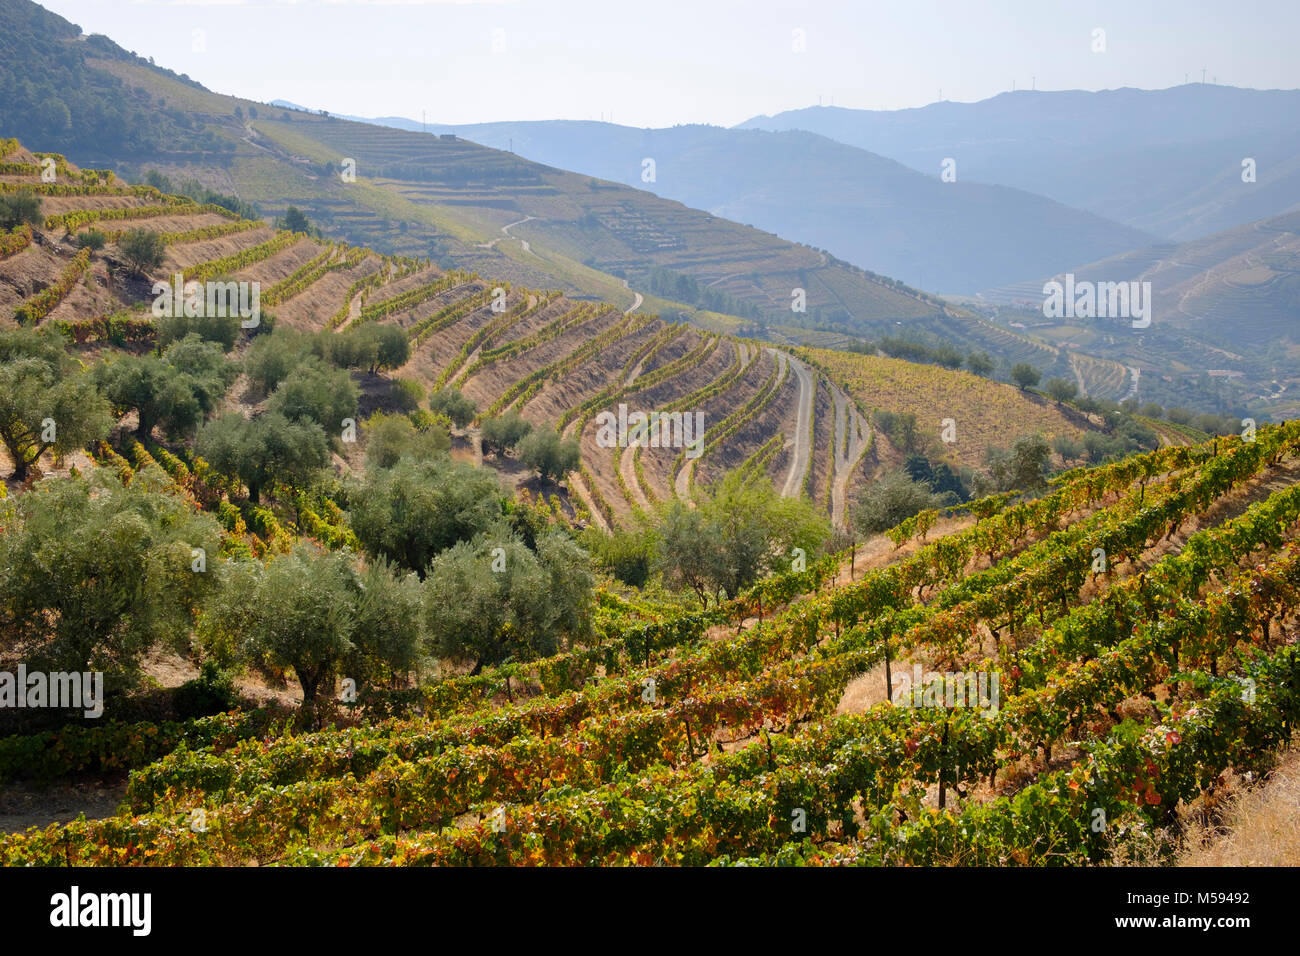 Vignobles en terrasses, près de la vallée de la rivière Douro, Pinhao, Portugal Banque D'Images